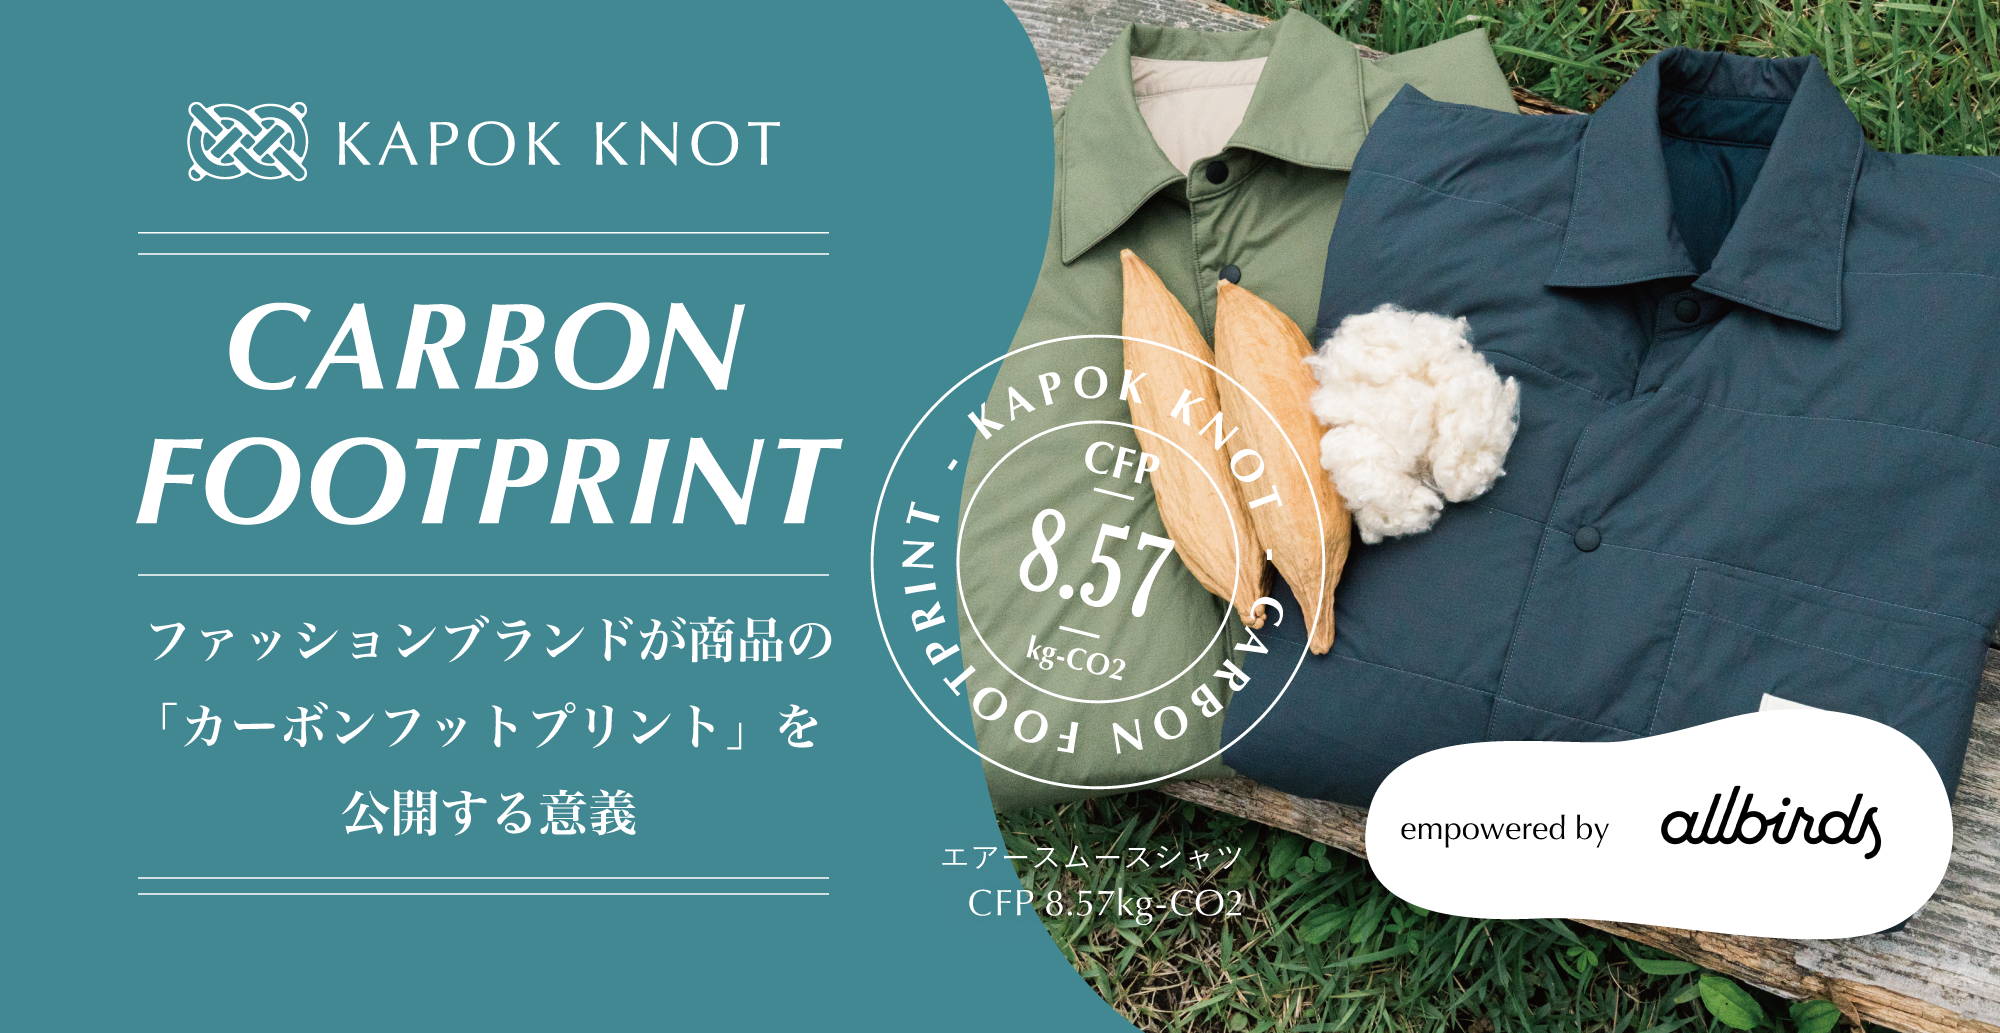 国内ブランド初、木の実由来のファッションブランド「KAPOK KNOT